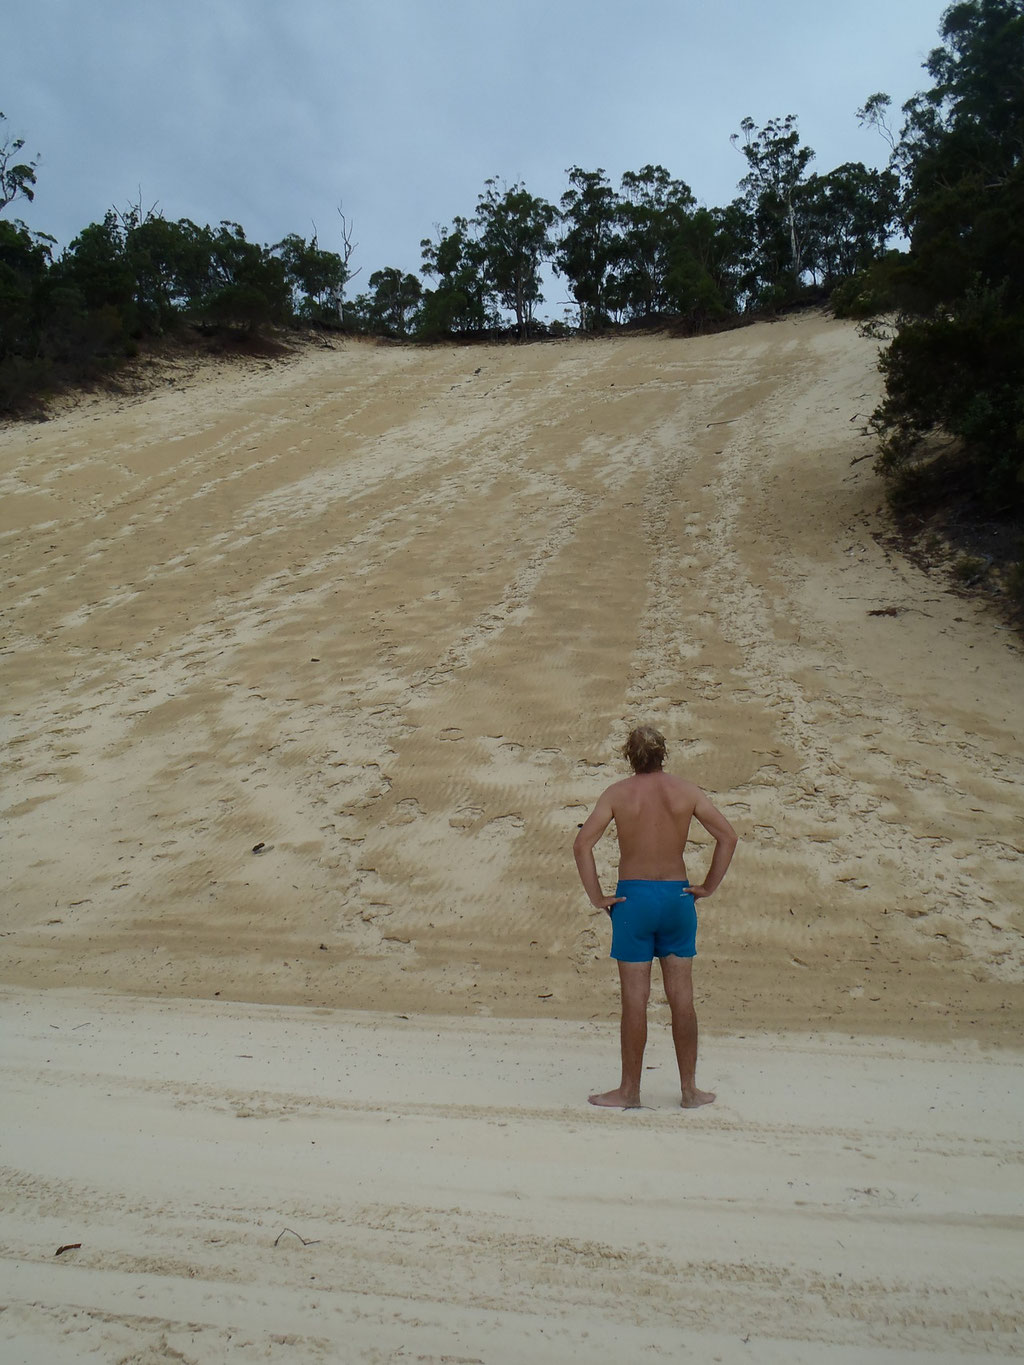 c'est parti pour monter en haut de la dune !